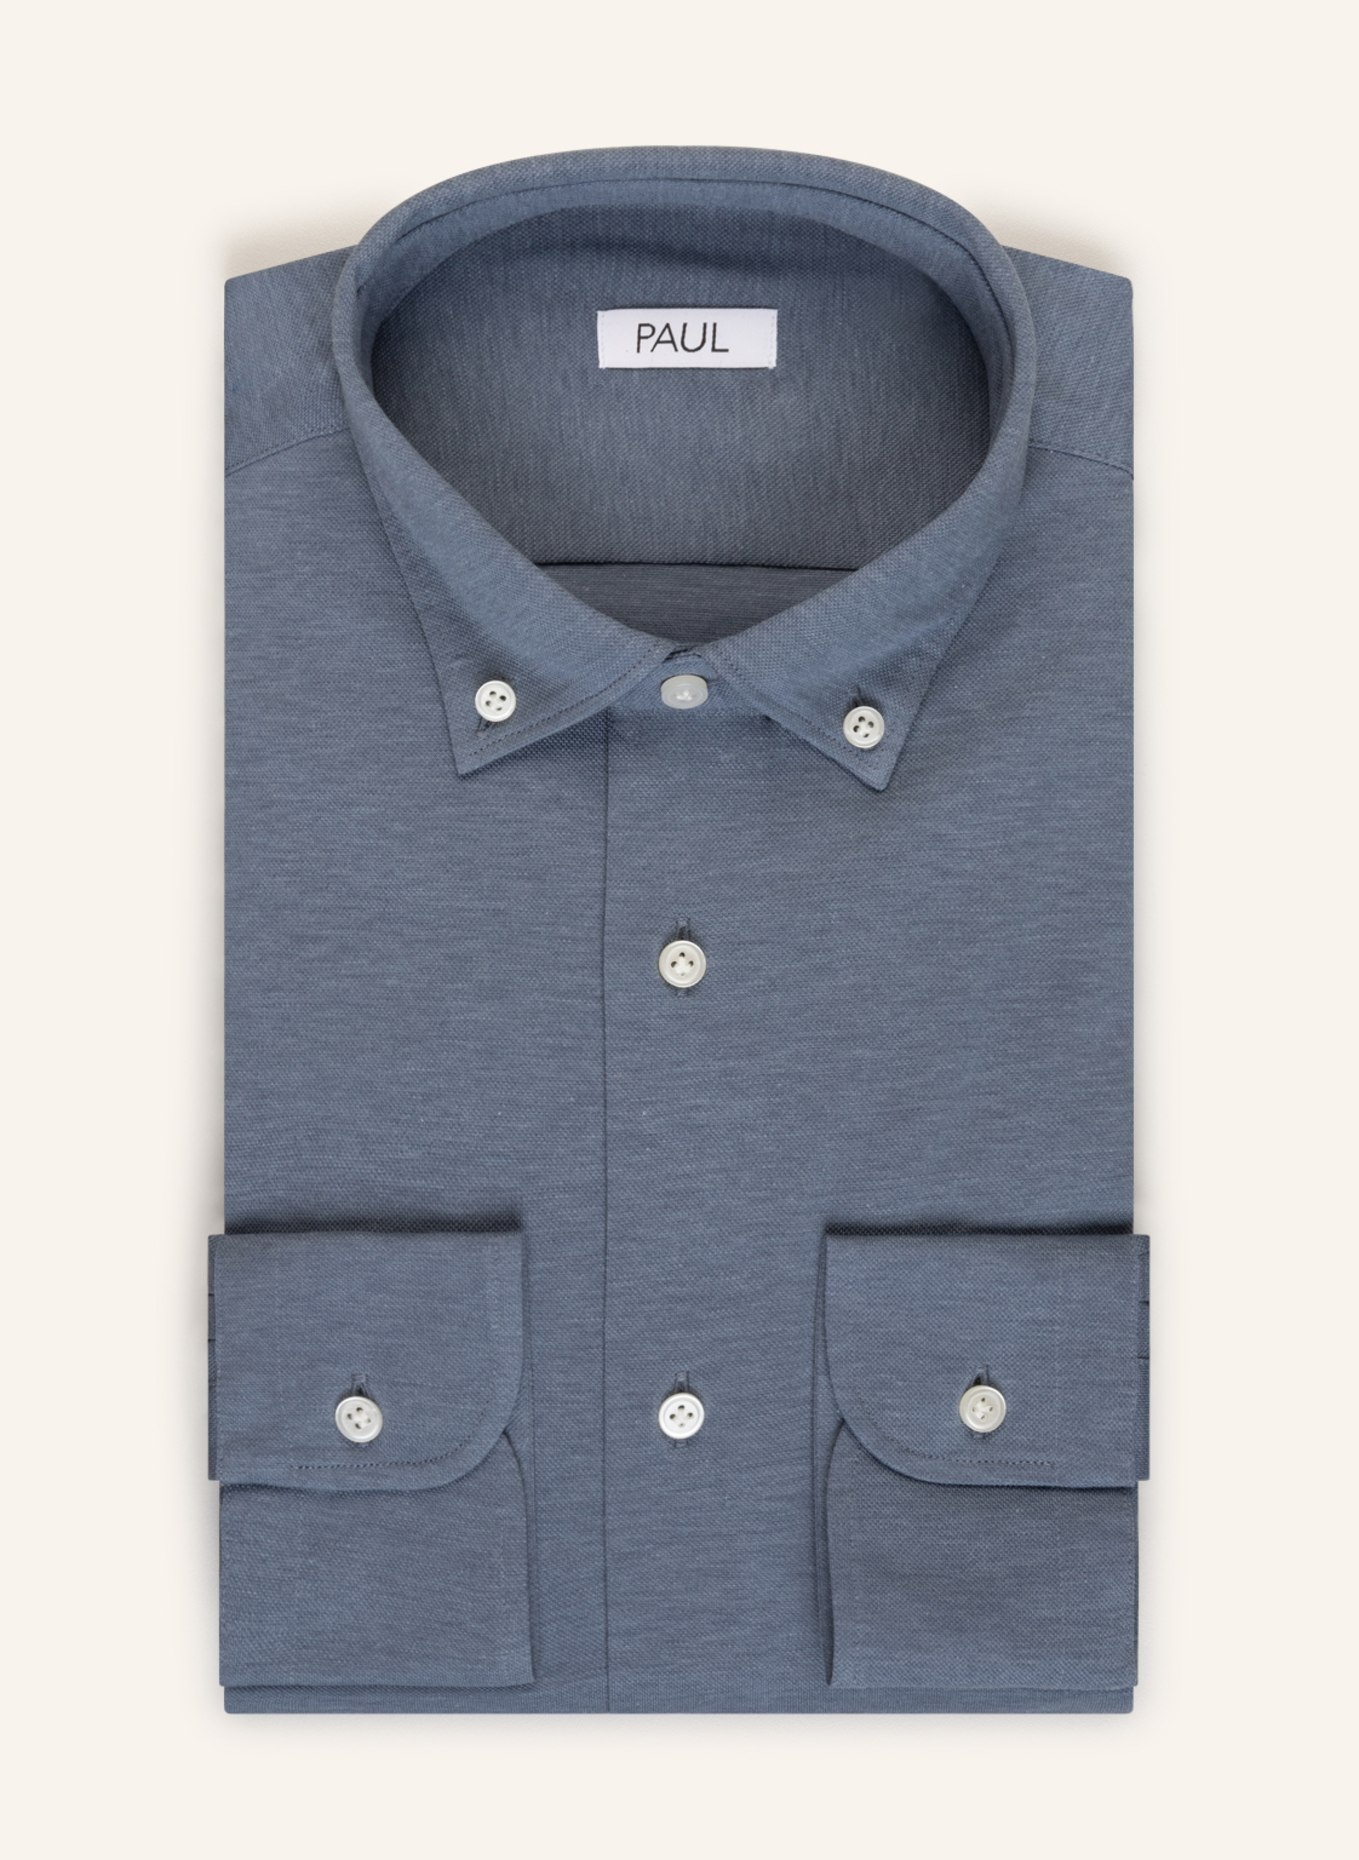 PAUL Piqué shirt slim fit, Color: BLUE GRAY (Image 1)